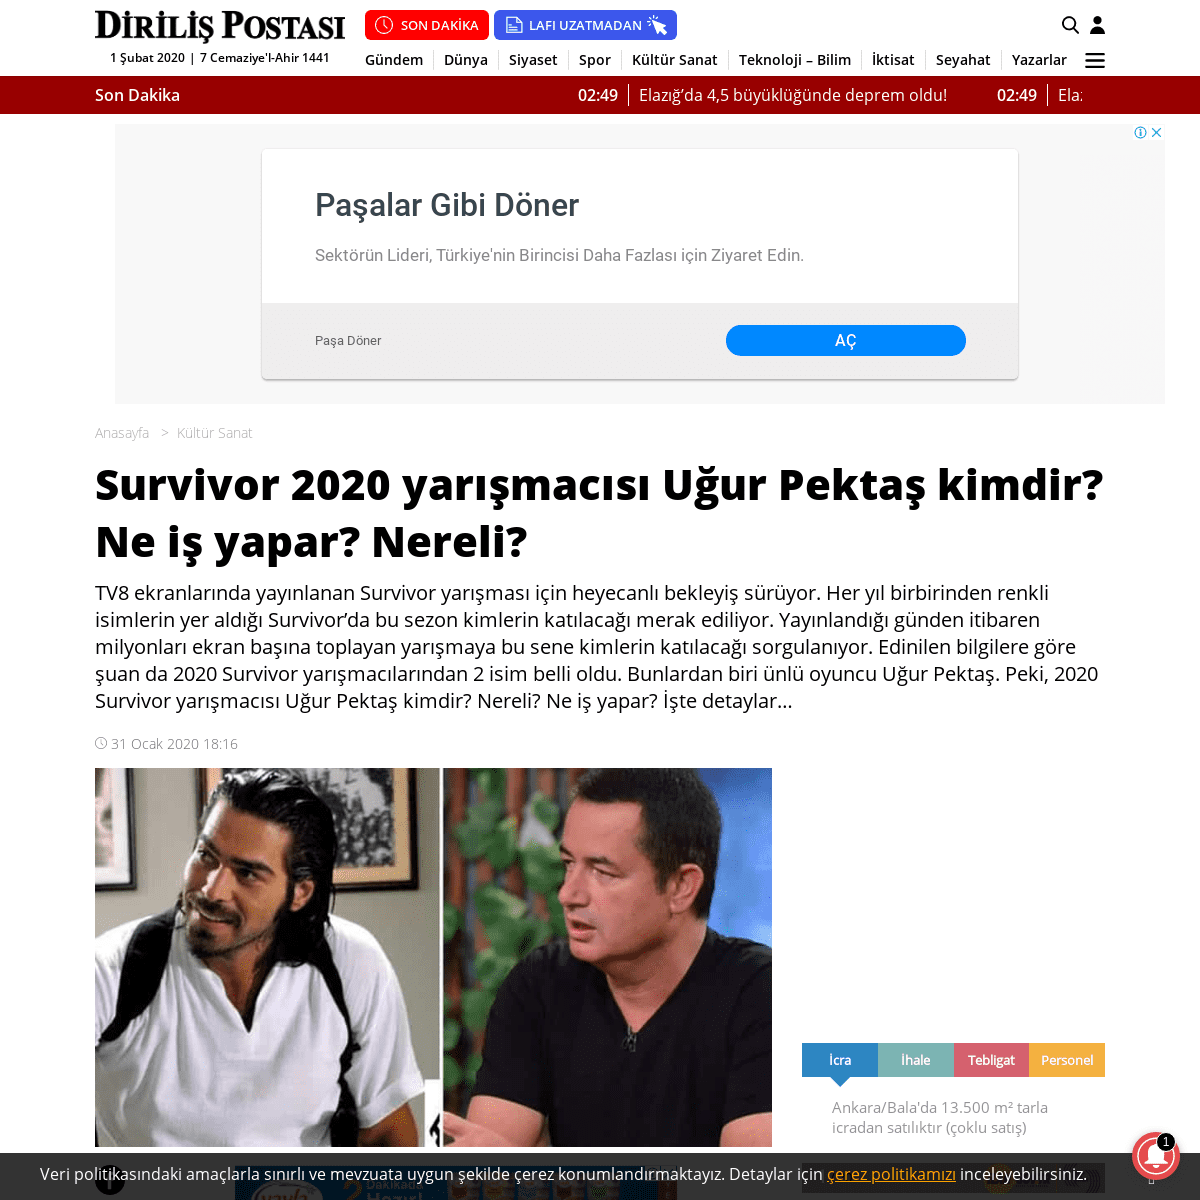 A complete backup of www.dirilispostasi.com/kultur-sanat/survivor-2020-yarismacisi-ugur-pektas-kimdir-ne-is-yapar-nereli-2